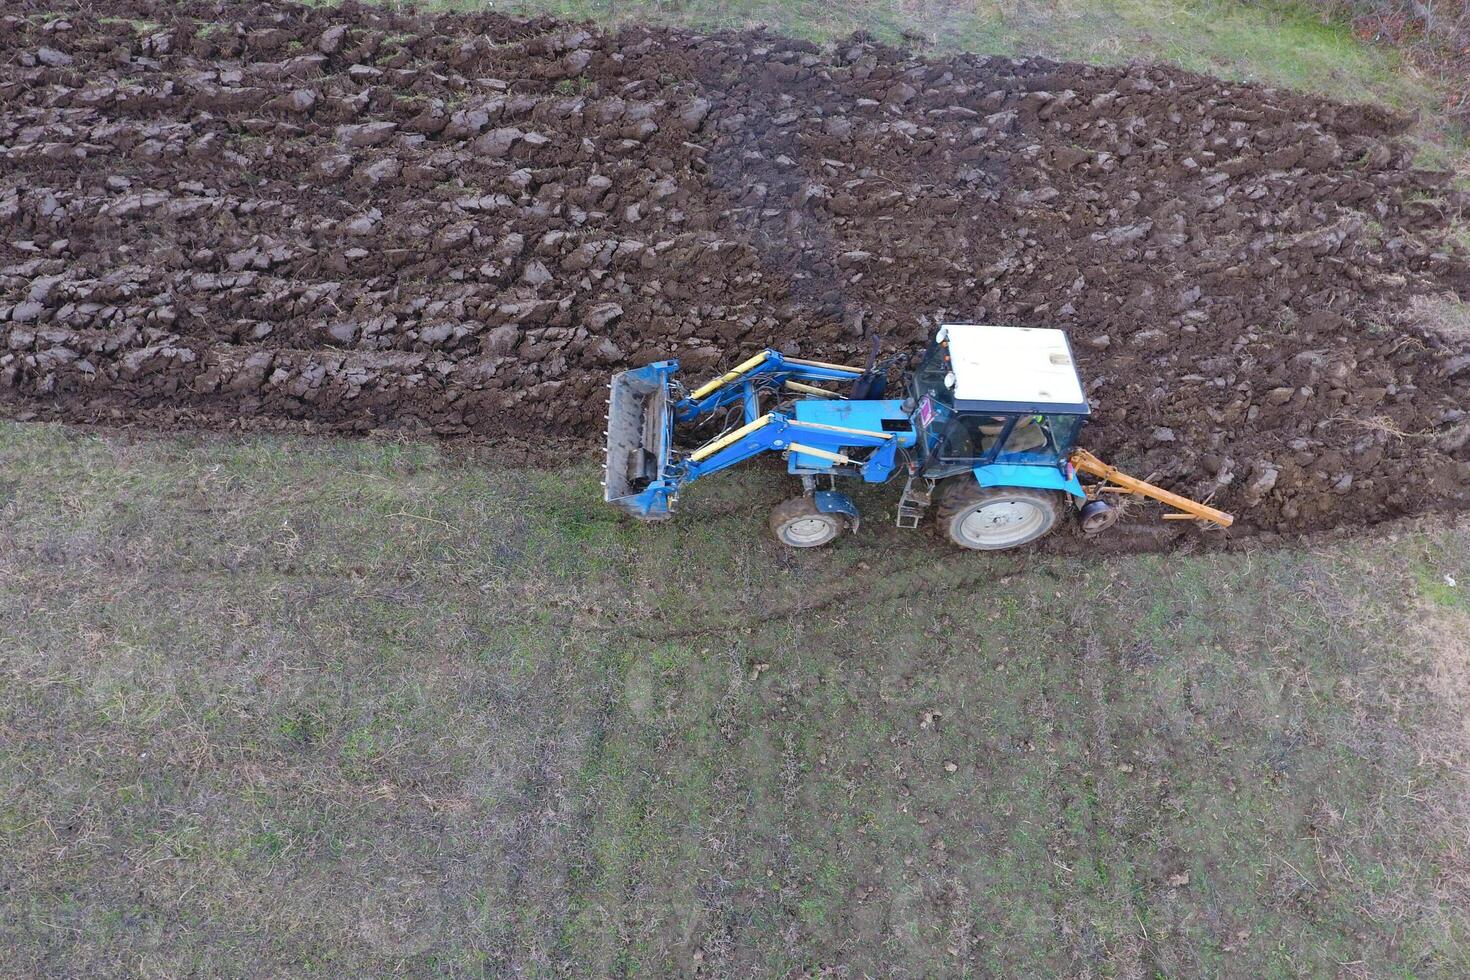 tractor arada el jardín. arada el suelo en el jardín foto